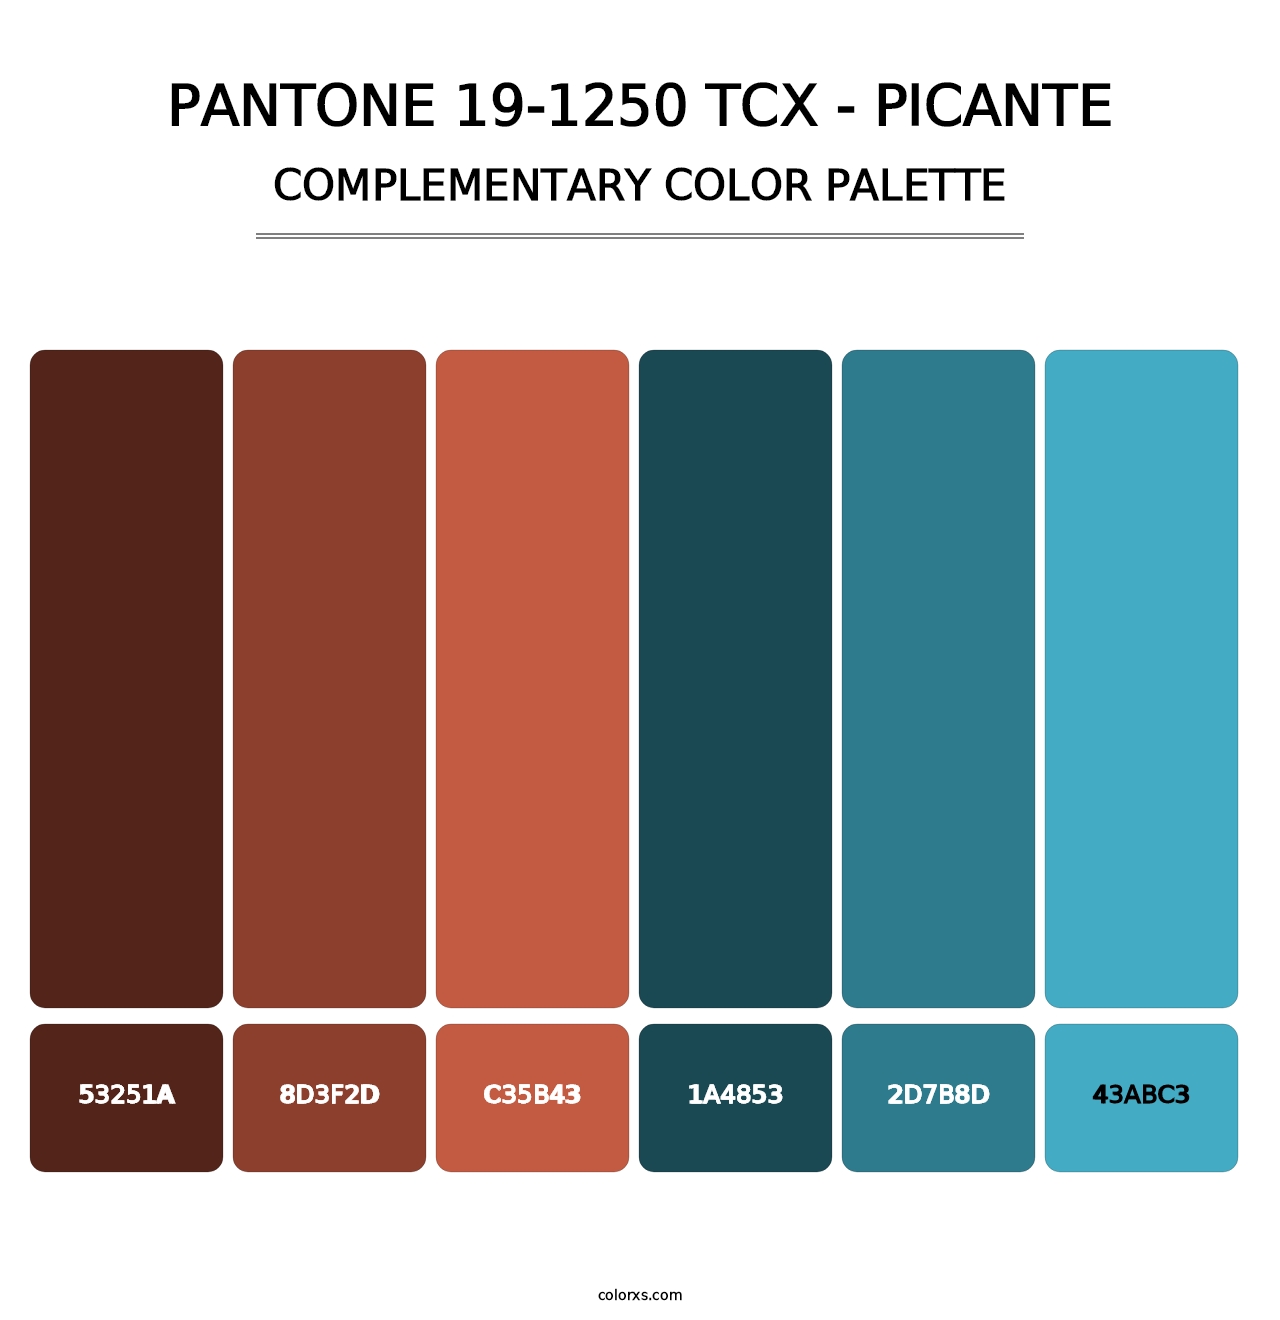 PANTONE 19-1250 TCX - Picante - Complementary Color Palette